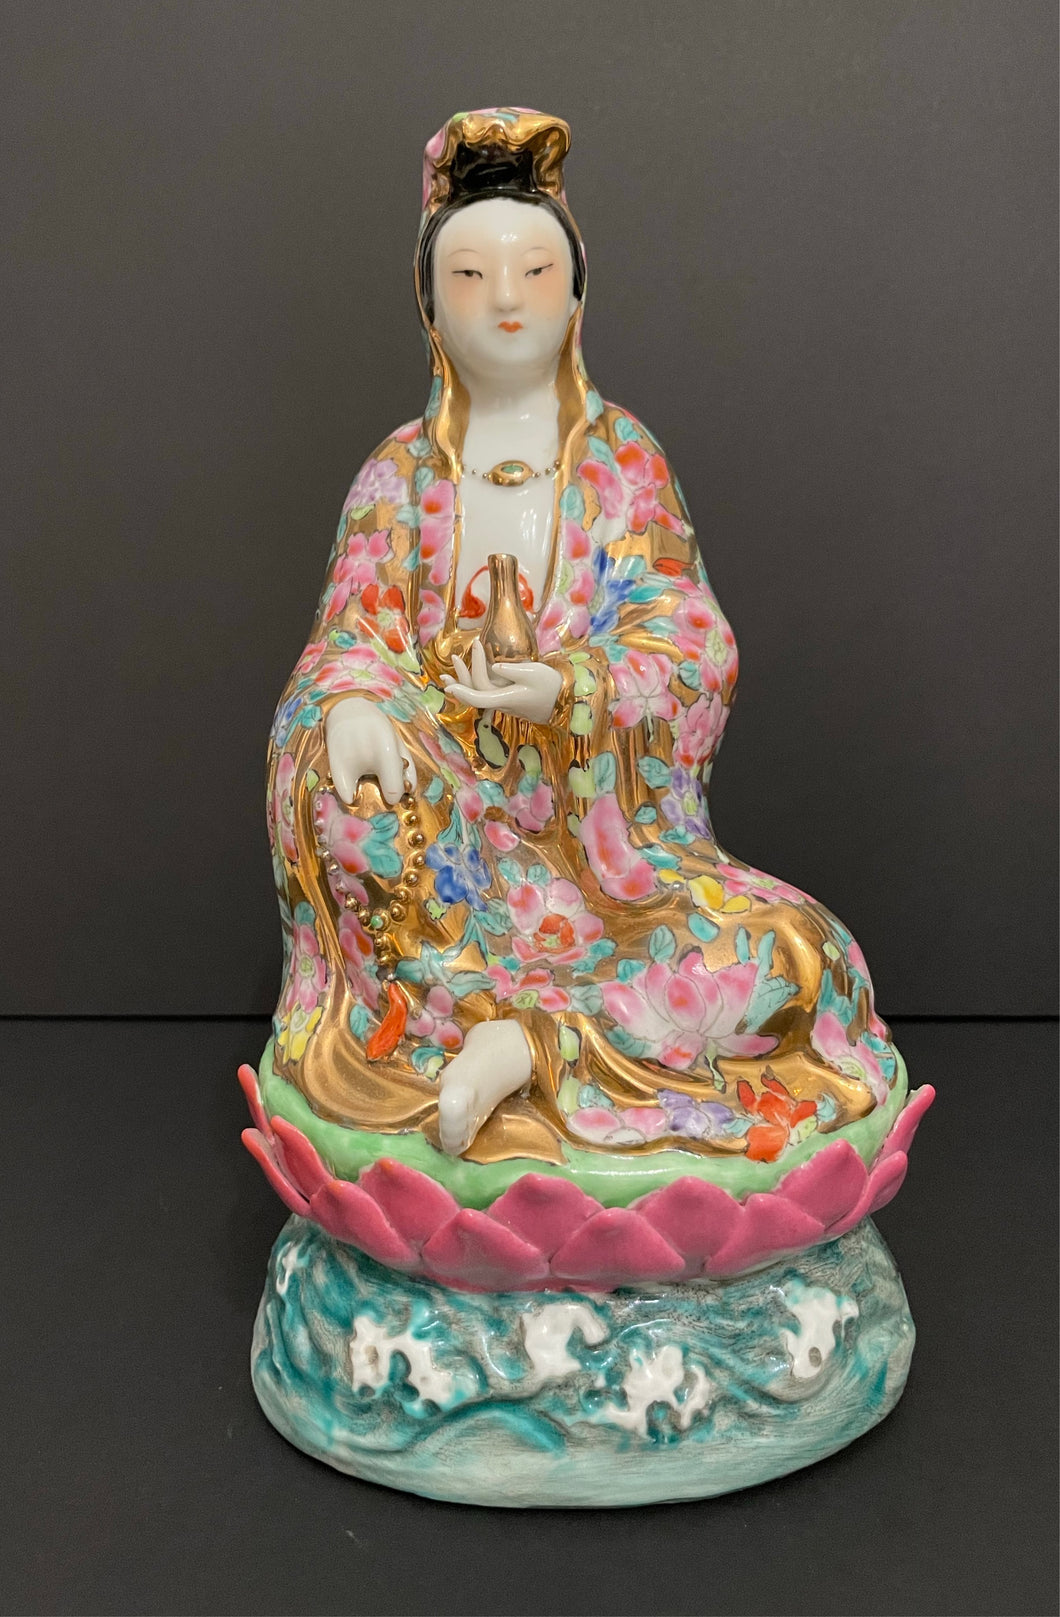 Antique Porcelain Chinese Kwan Yin Guan Yin Goddess Sitting on Lotus Figurine